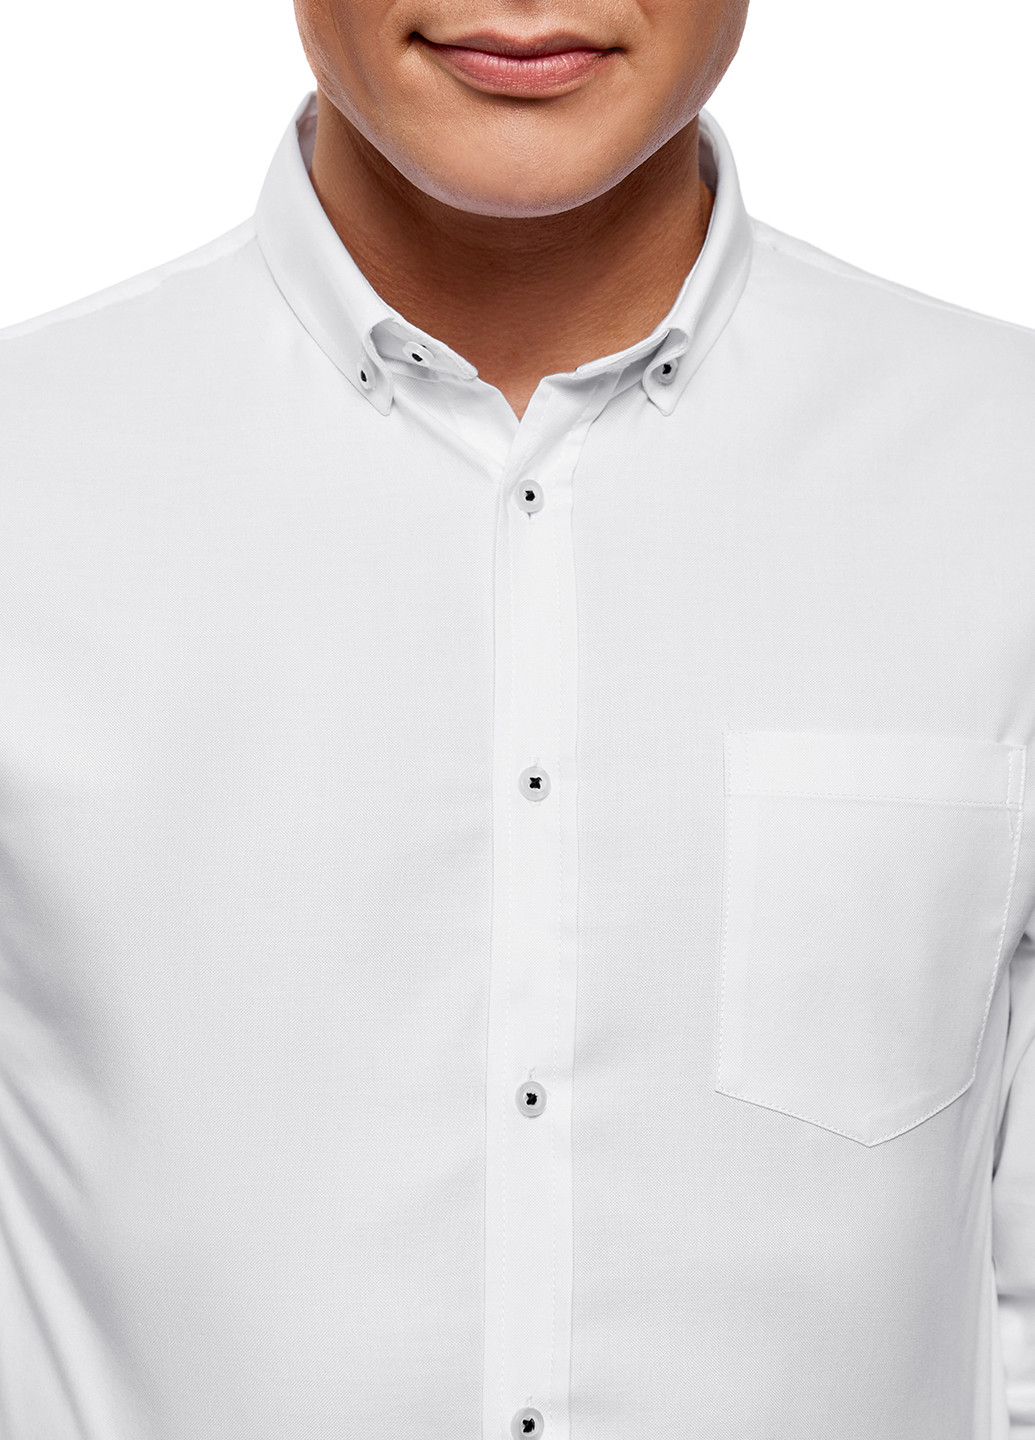 Белая классическая рубашка Oodji с длинным рукавом